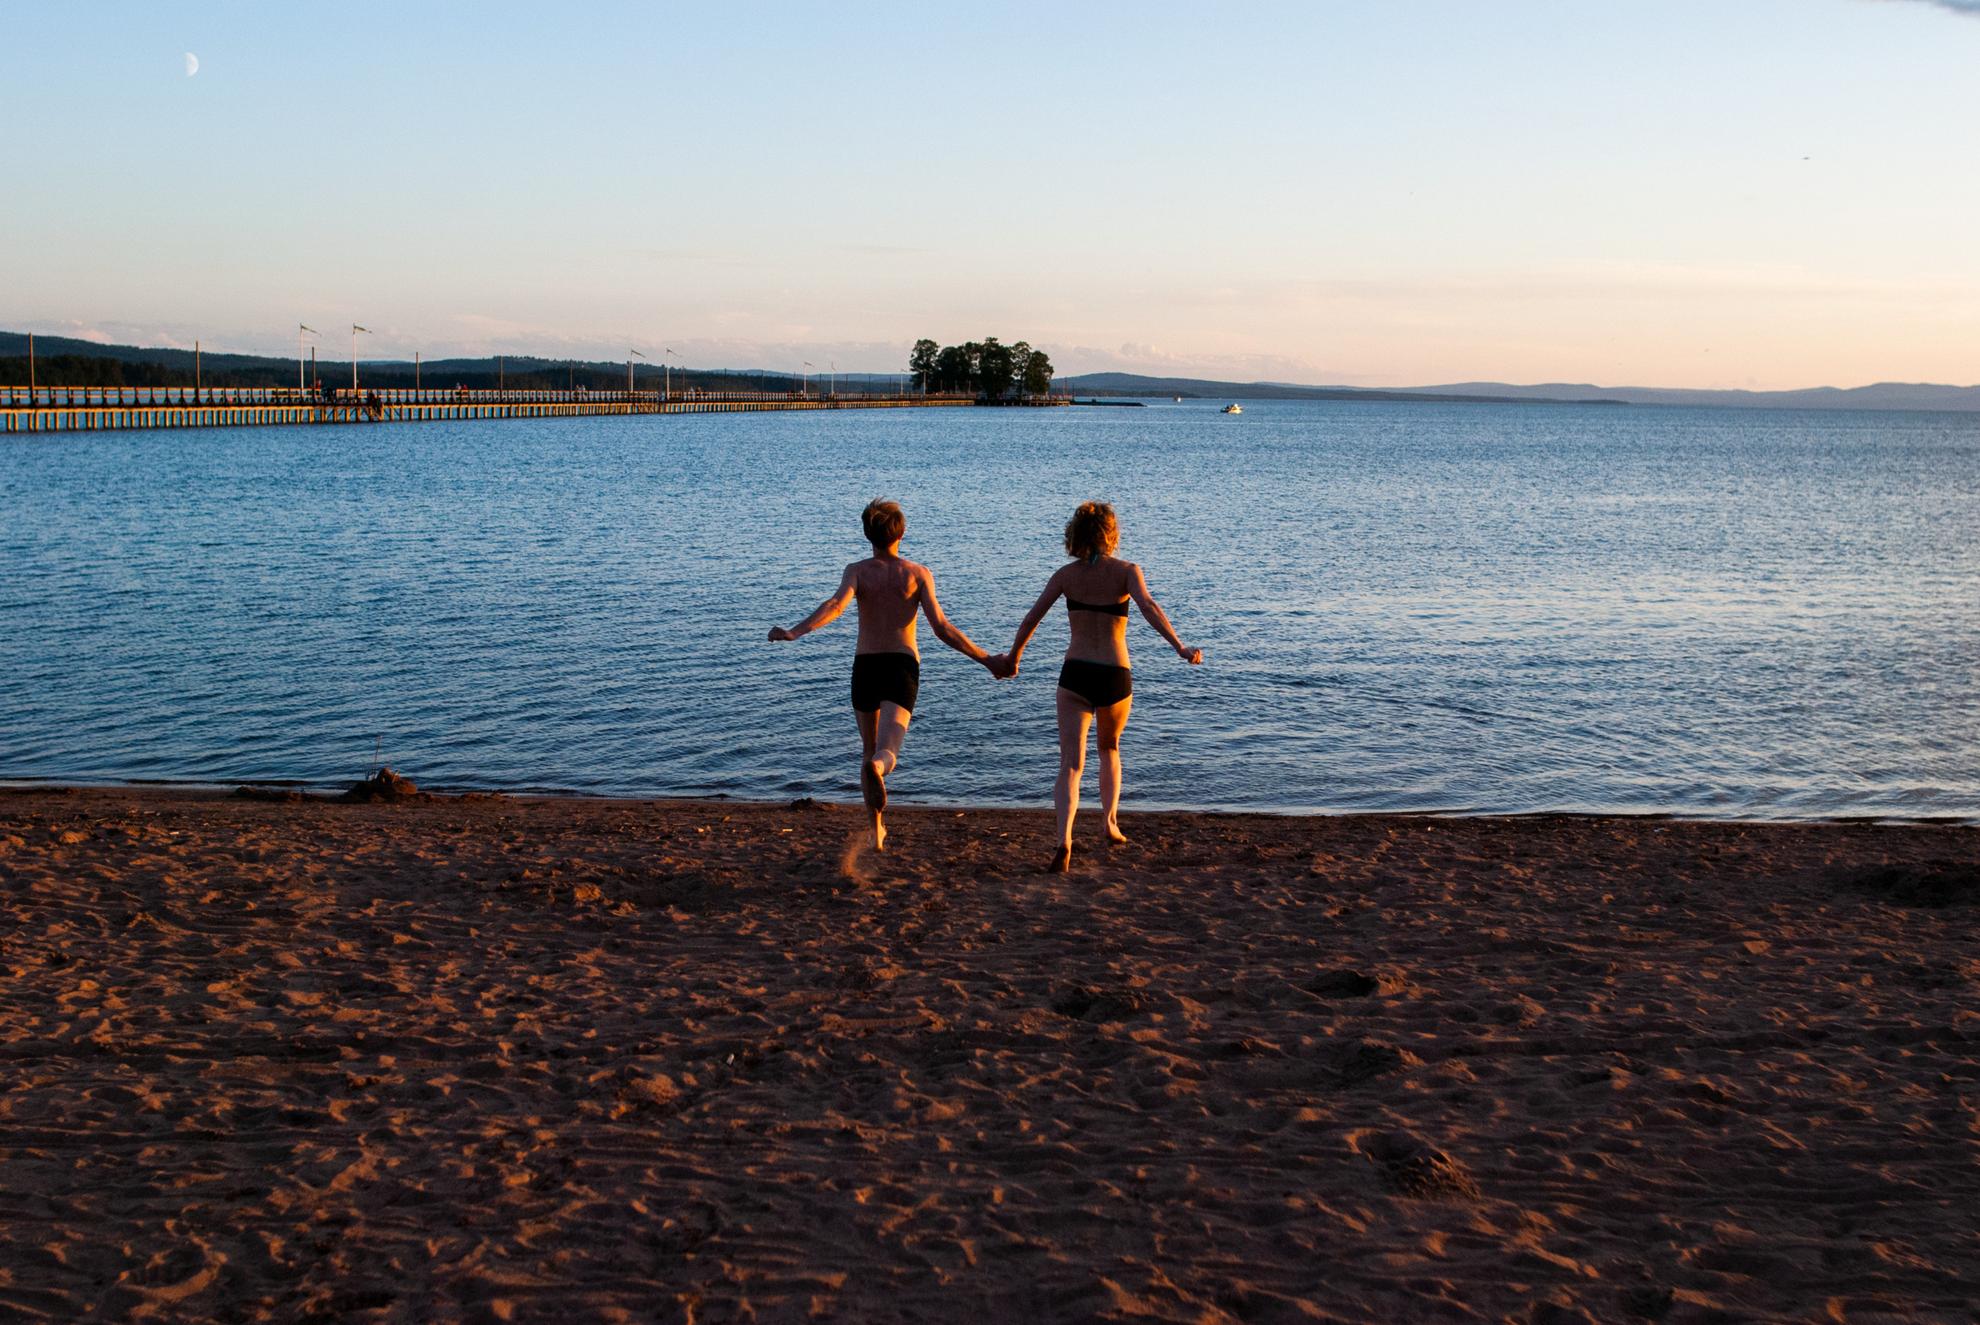 Deux personnes en maillot de bain courant sur une plage en direction de l'eau.